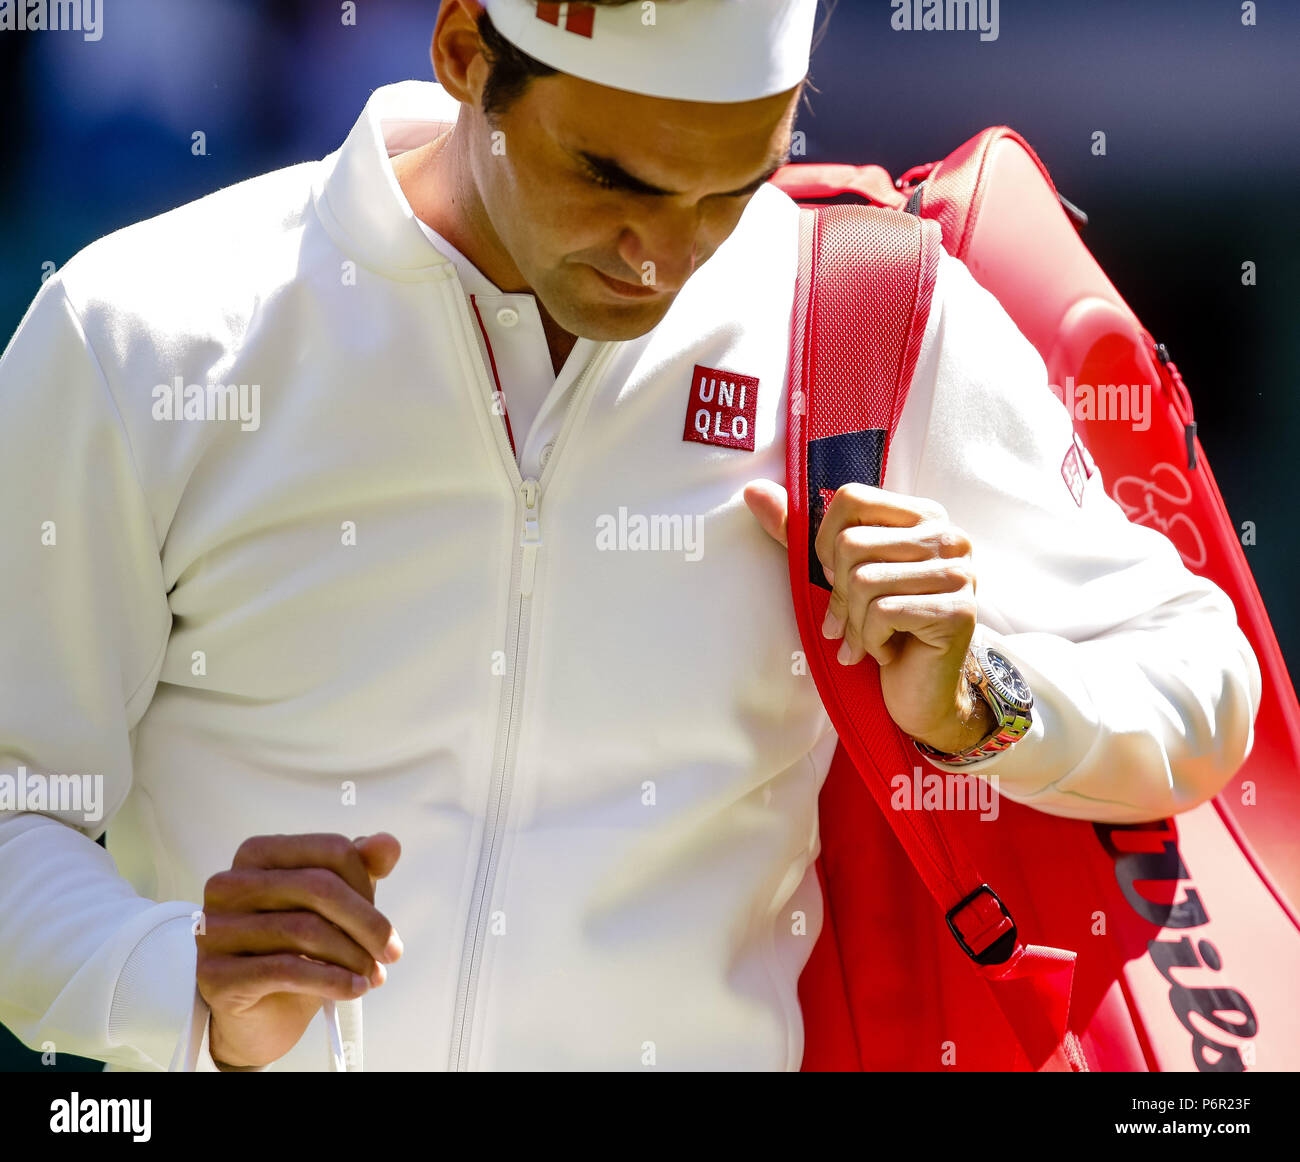 Londres, Reino Unido, 2 de julio de 2018: Roger Federer de Suiza lleva ropa  de marca japonesa desde su nueva guía Uniqlo durante el día 1 en los  Campeonatos de Tenis de